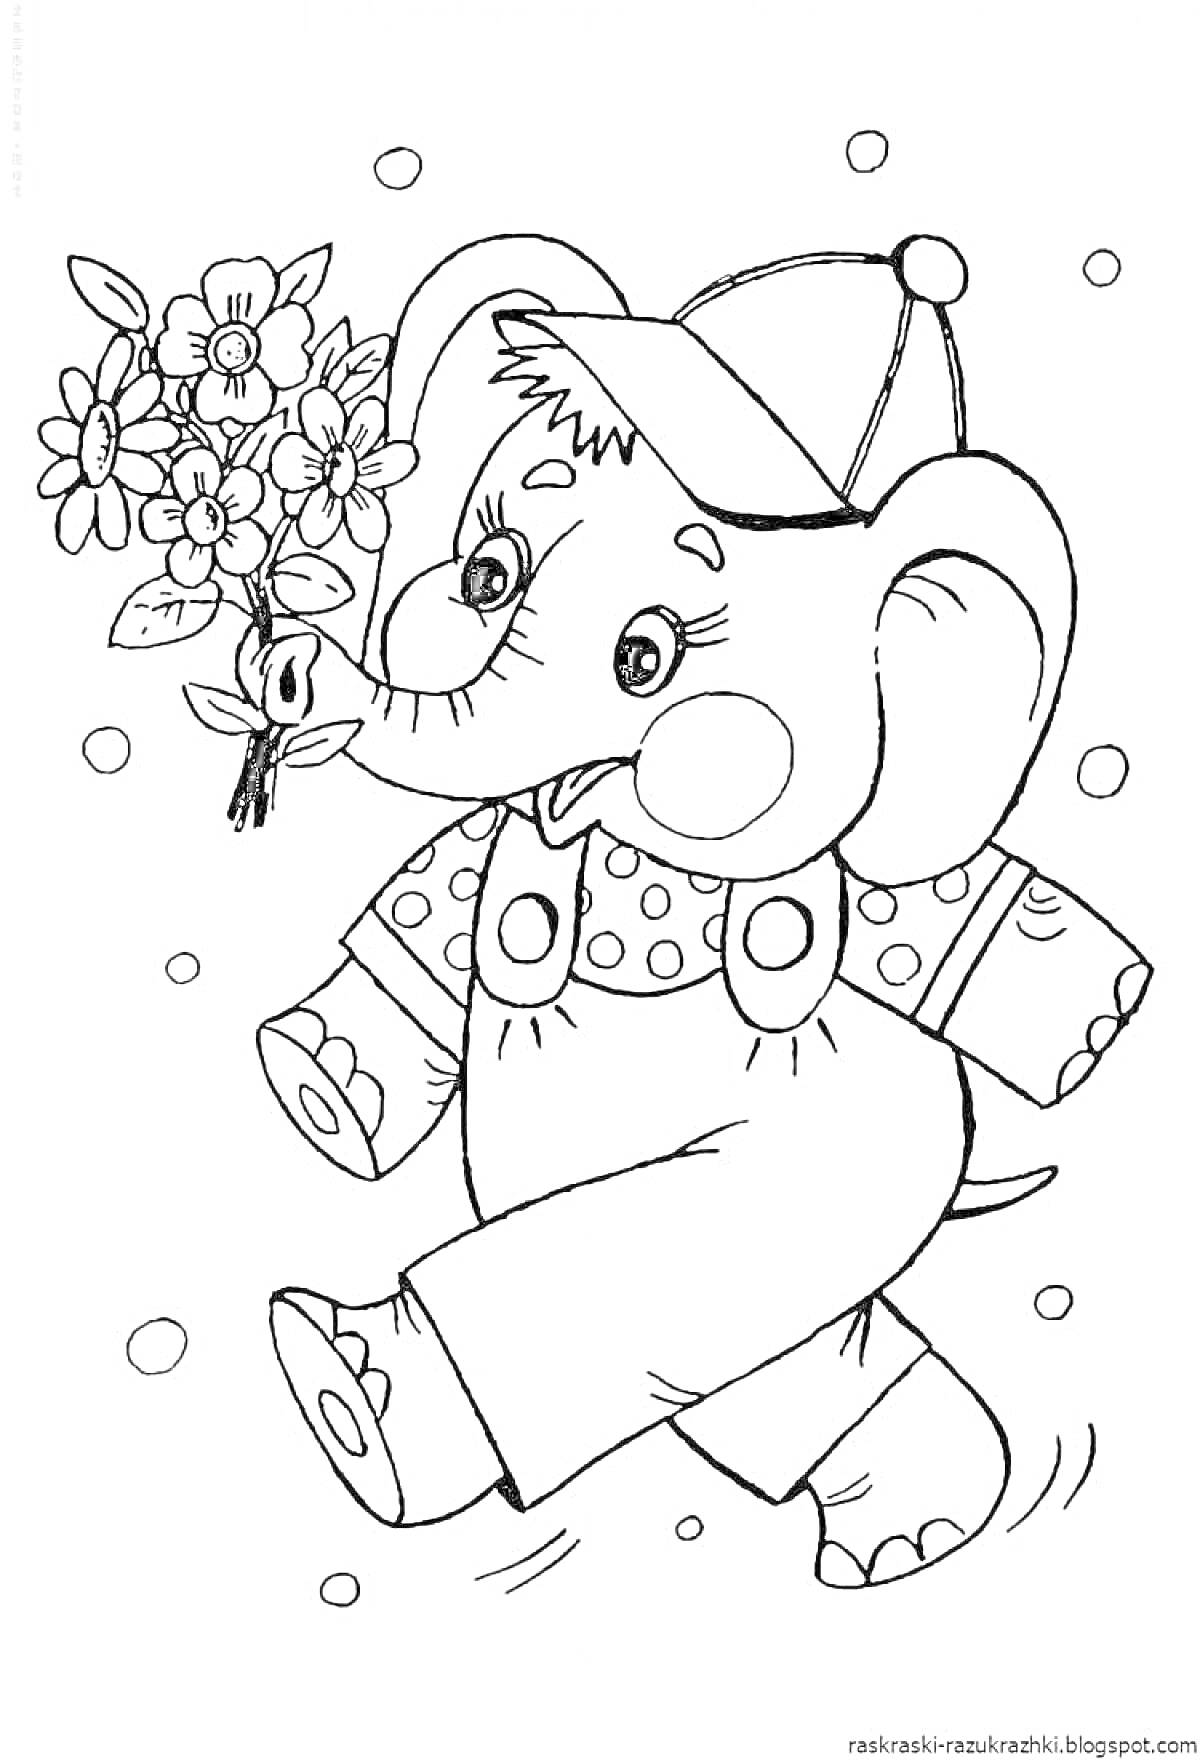 Слонёнок с цветами в шляпе и комбинезоне